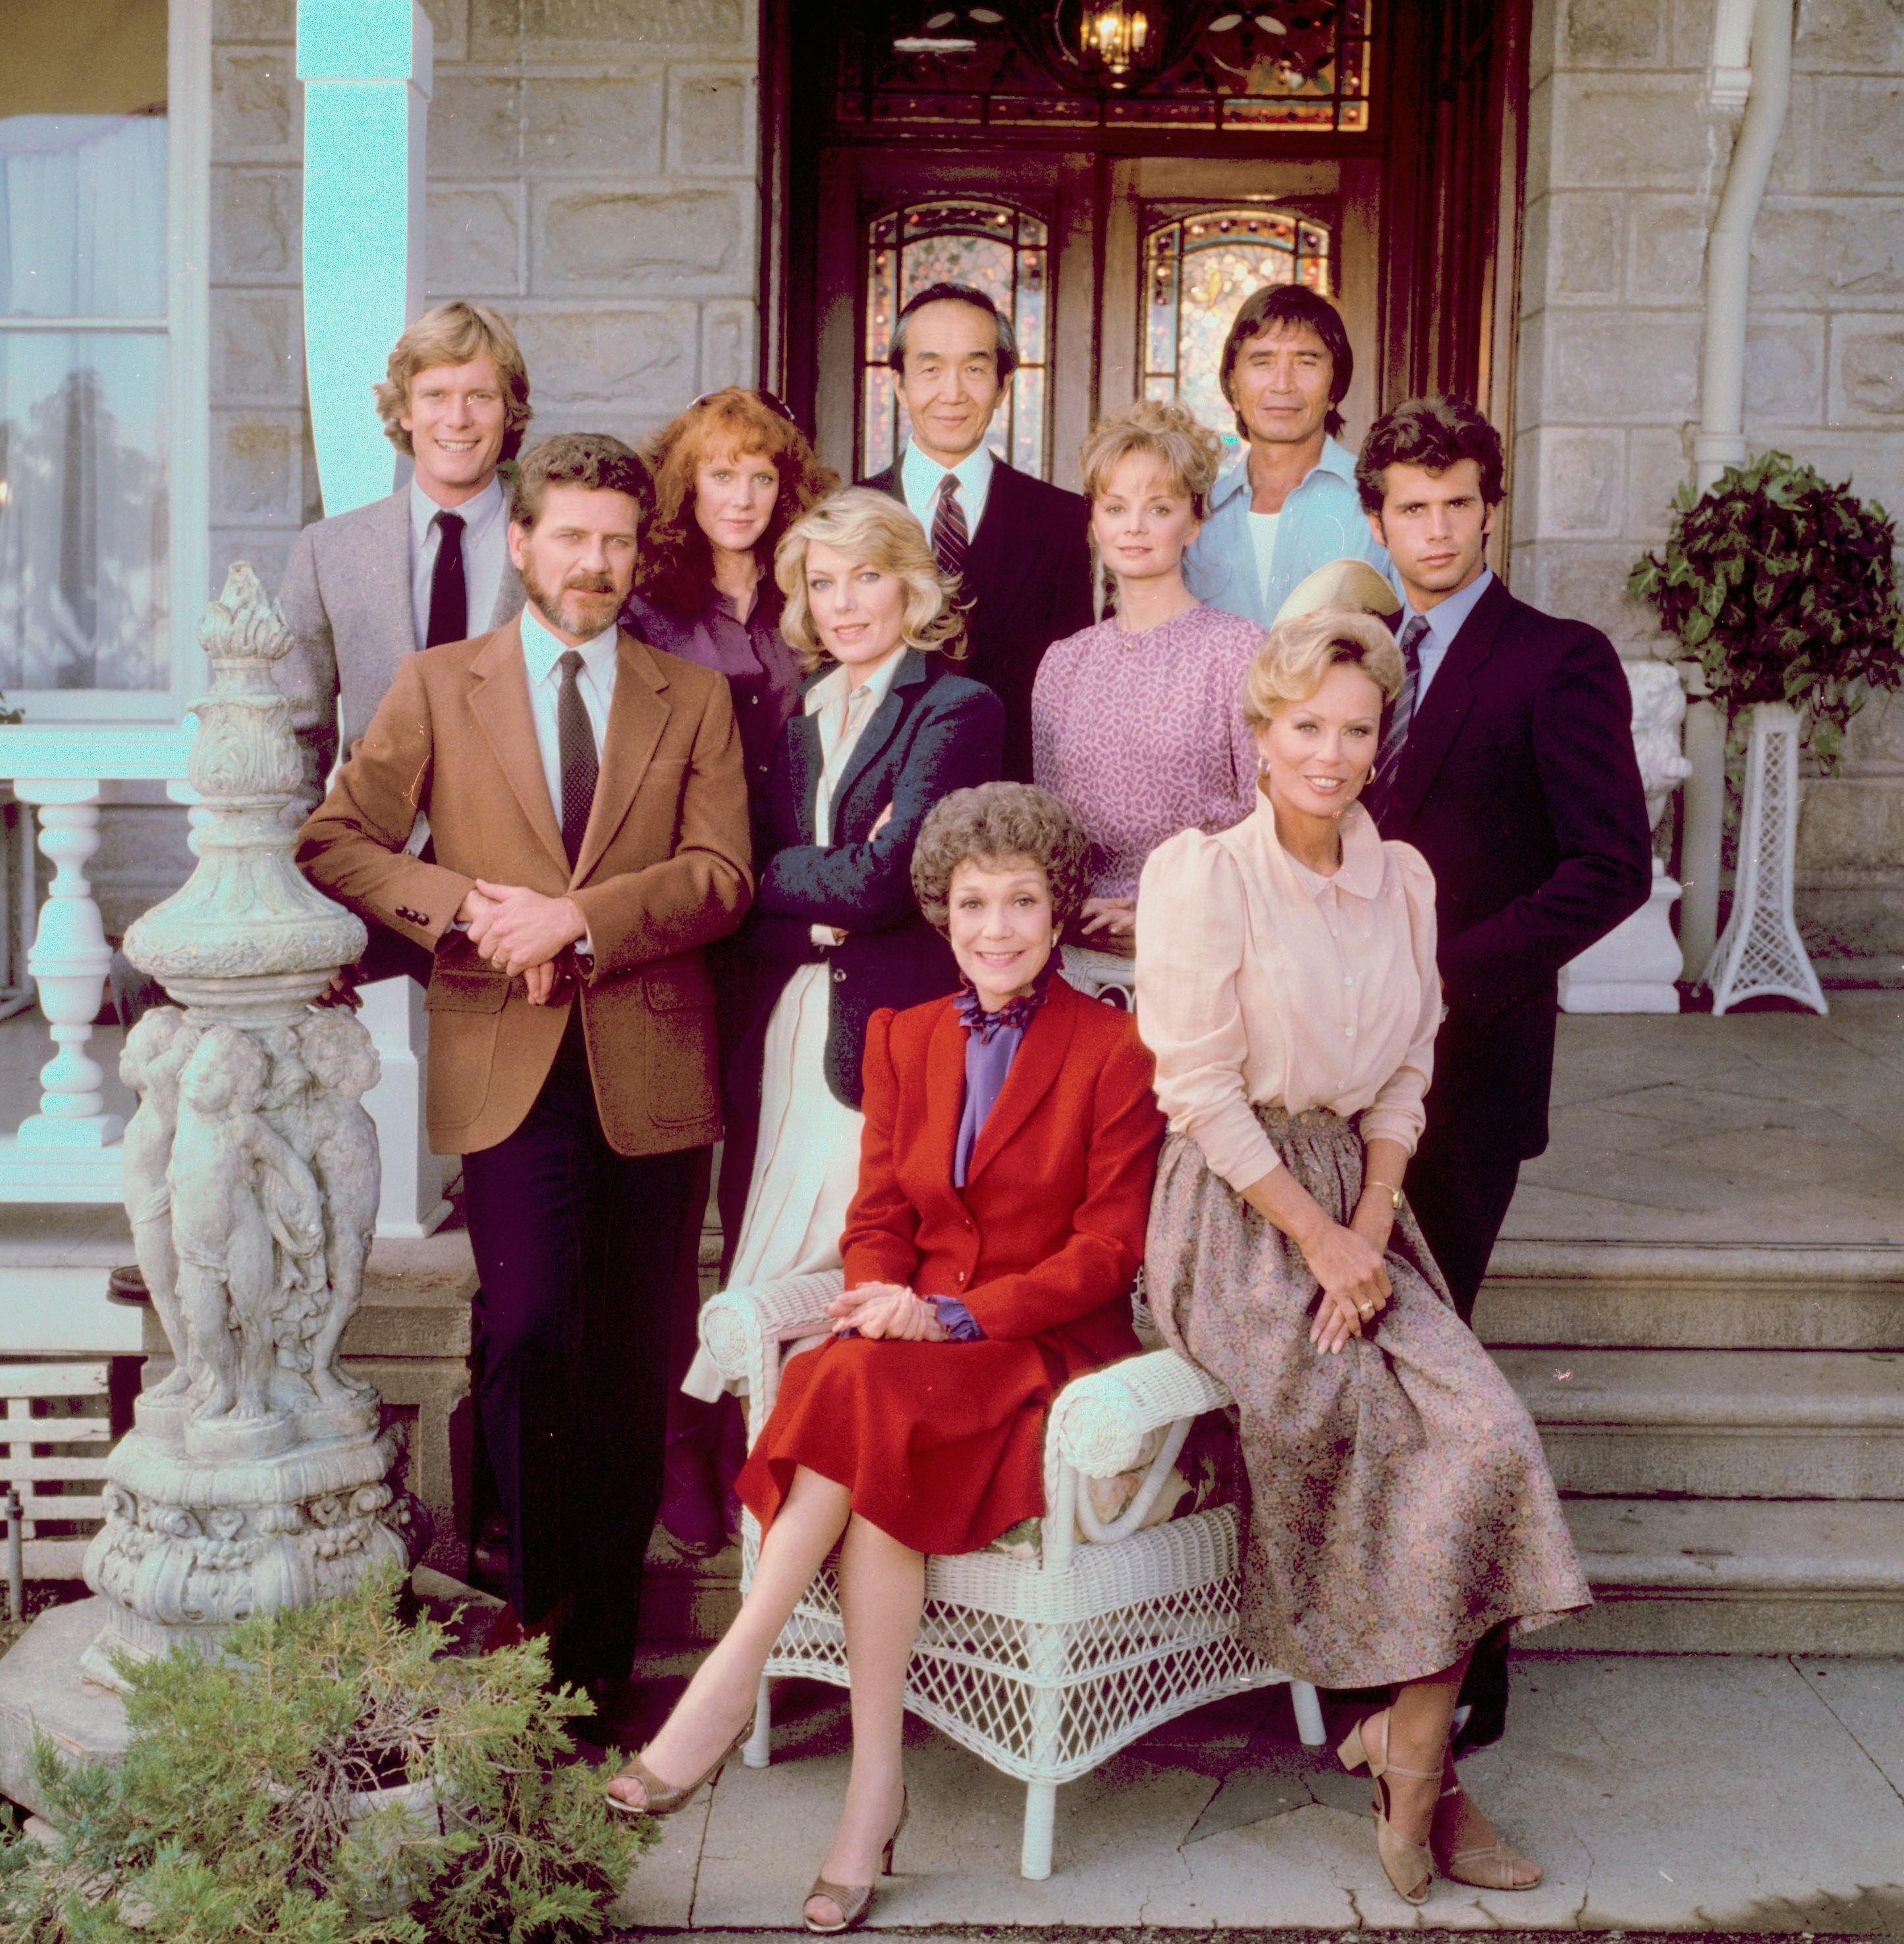 The cast from the premiere season of the primetime soap opera series Falcon Crest